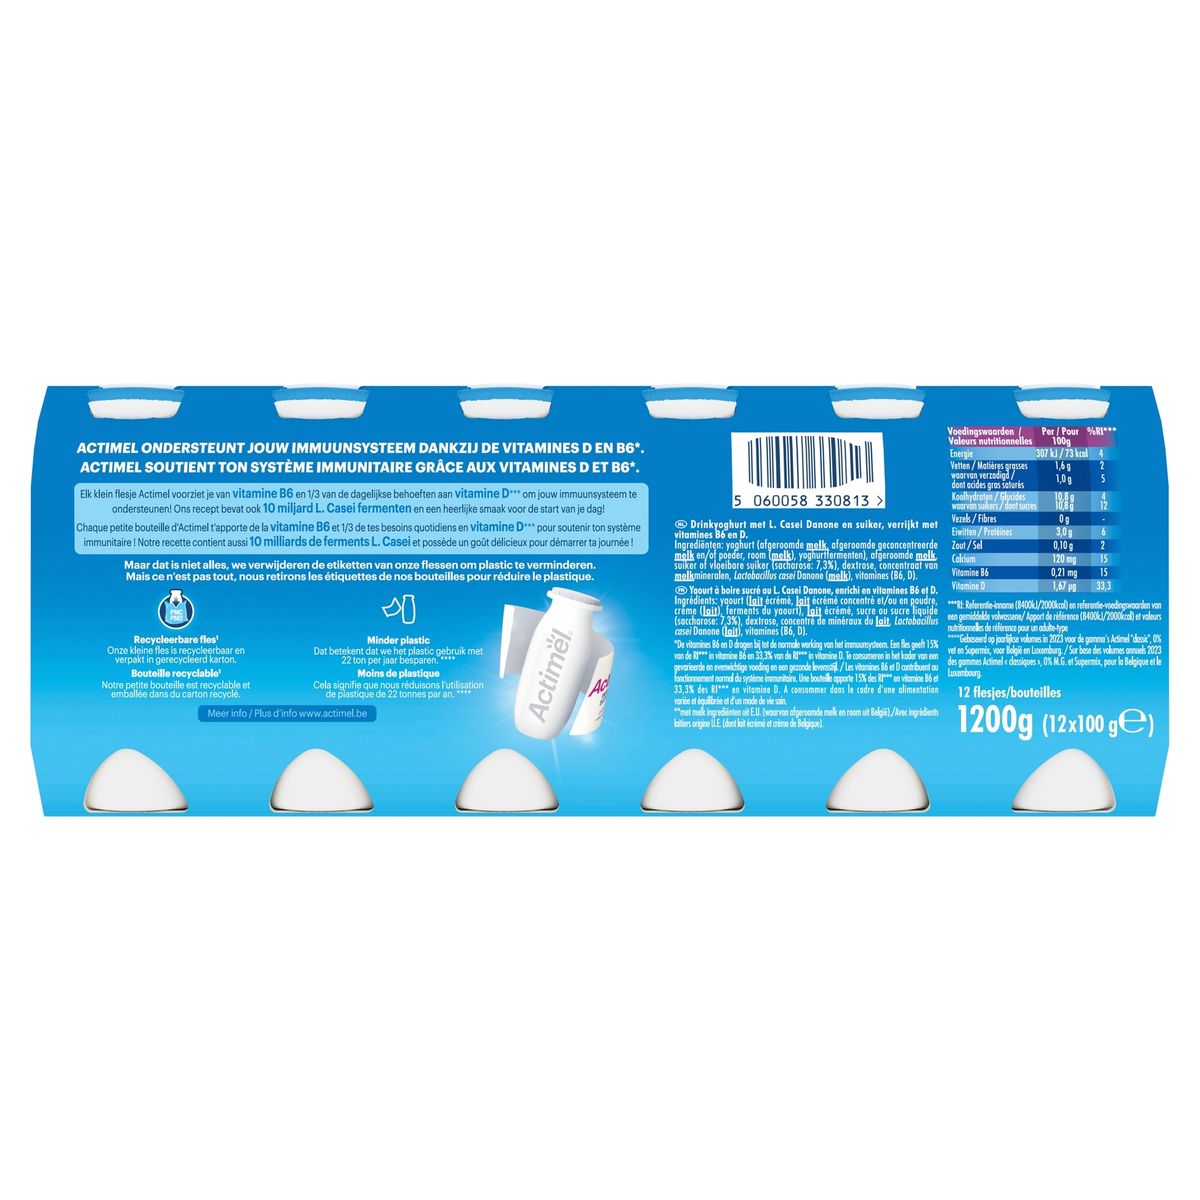 Actimel Drinkyoghurt Family Pack 12 x 100 g